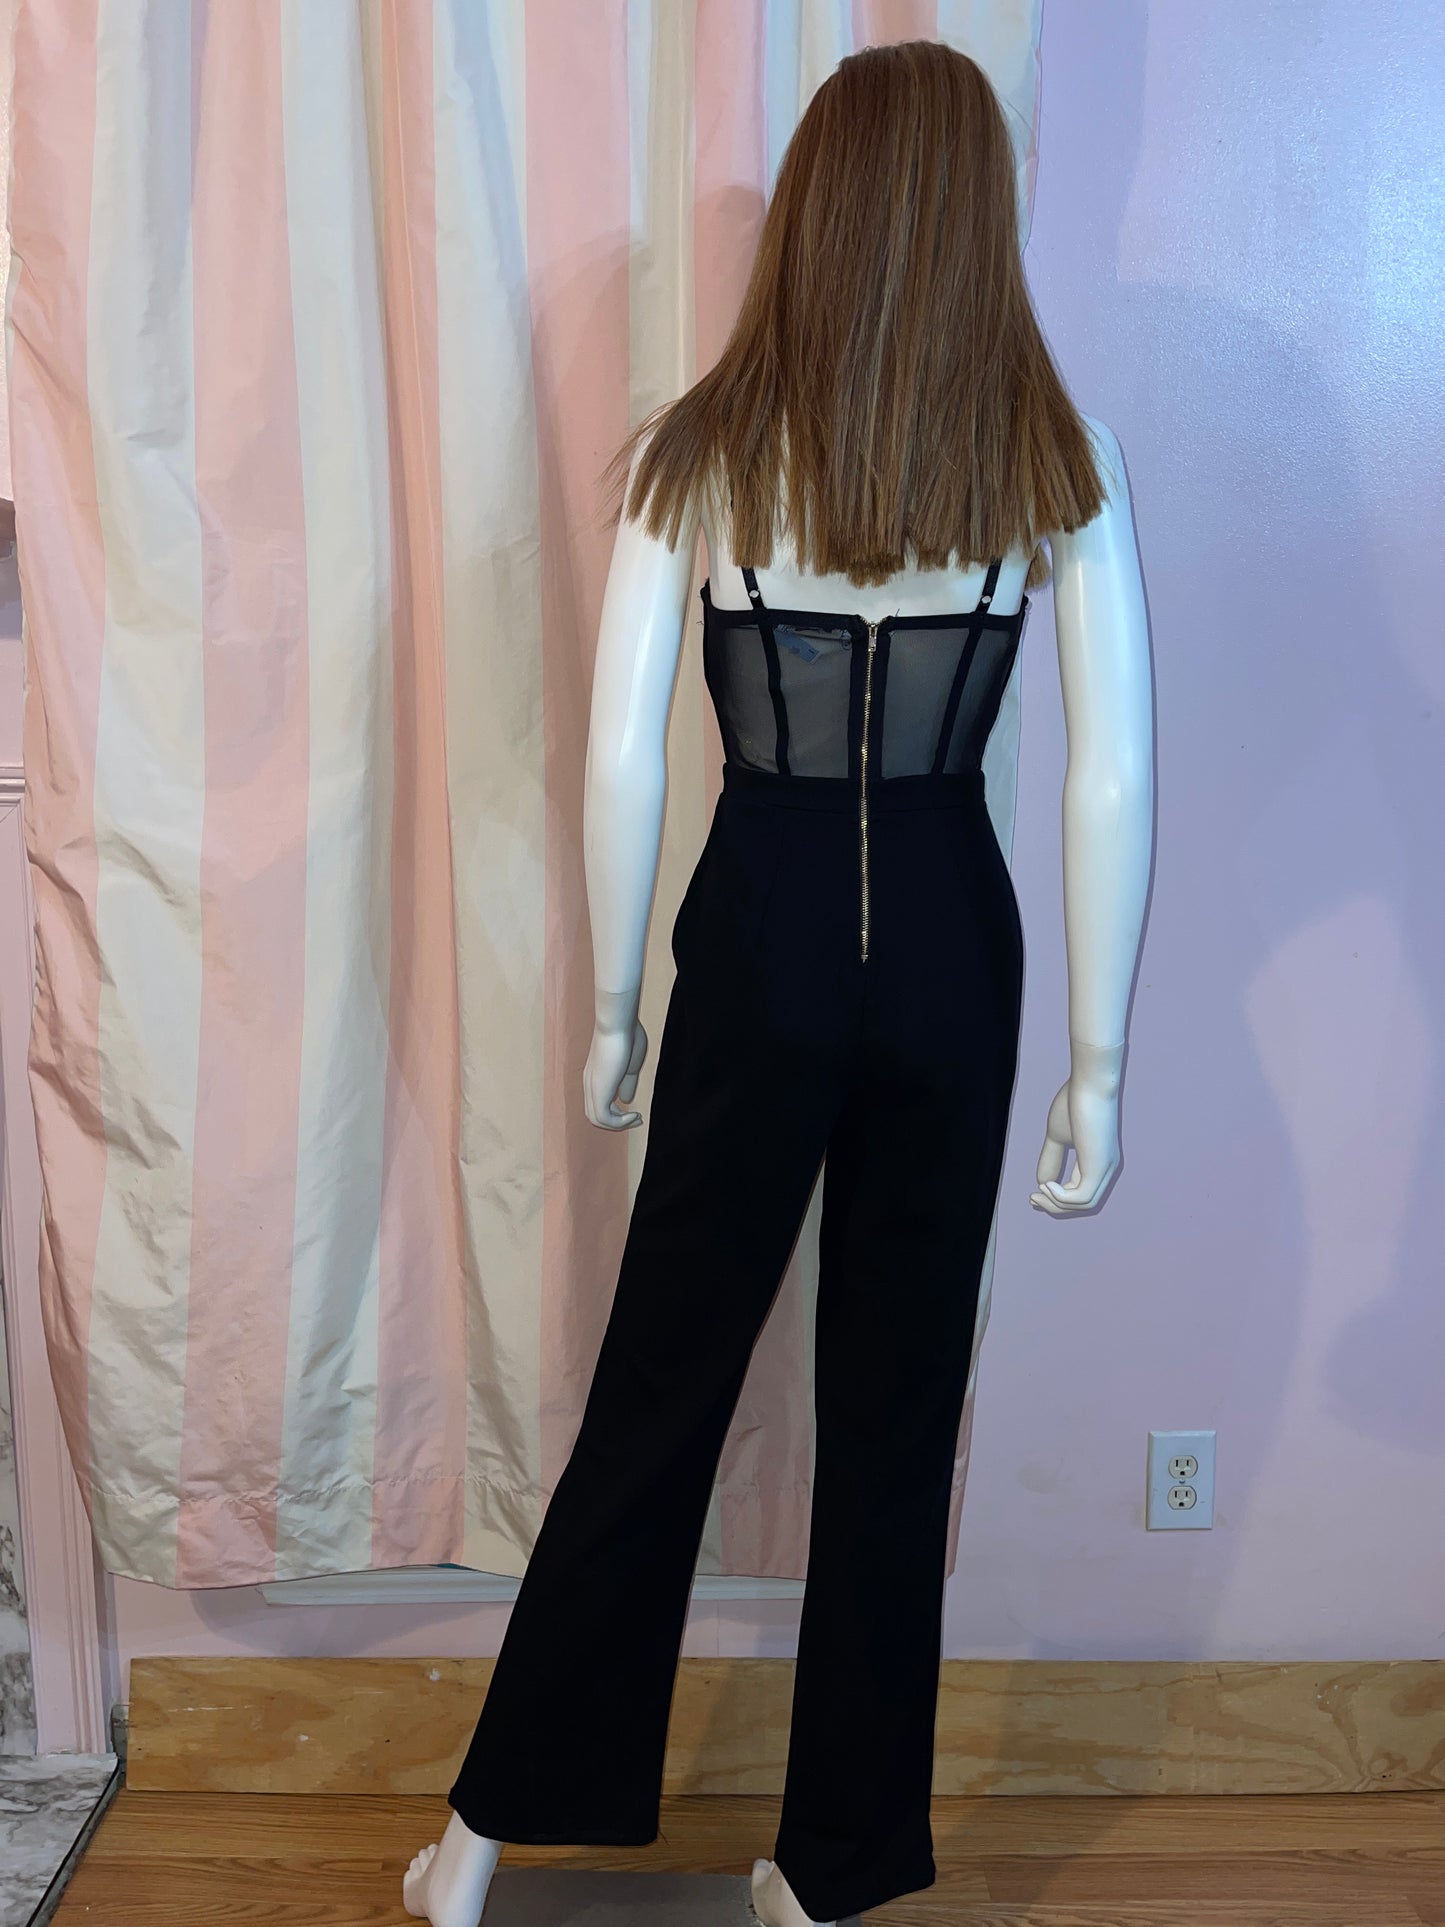 Black Lace Bustier Corset Bodysuit Pantsuit